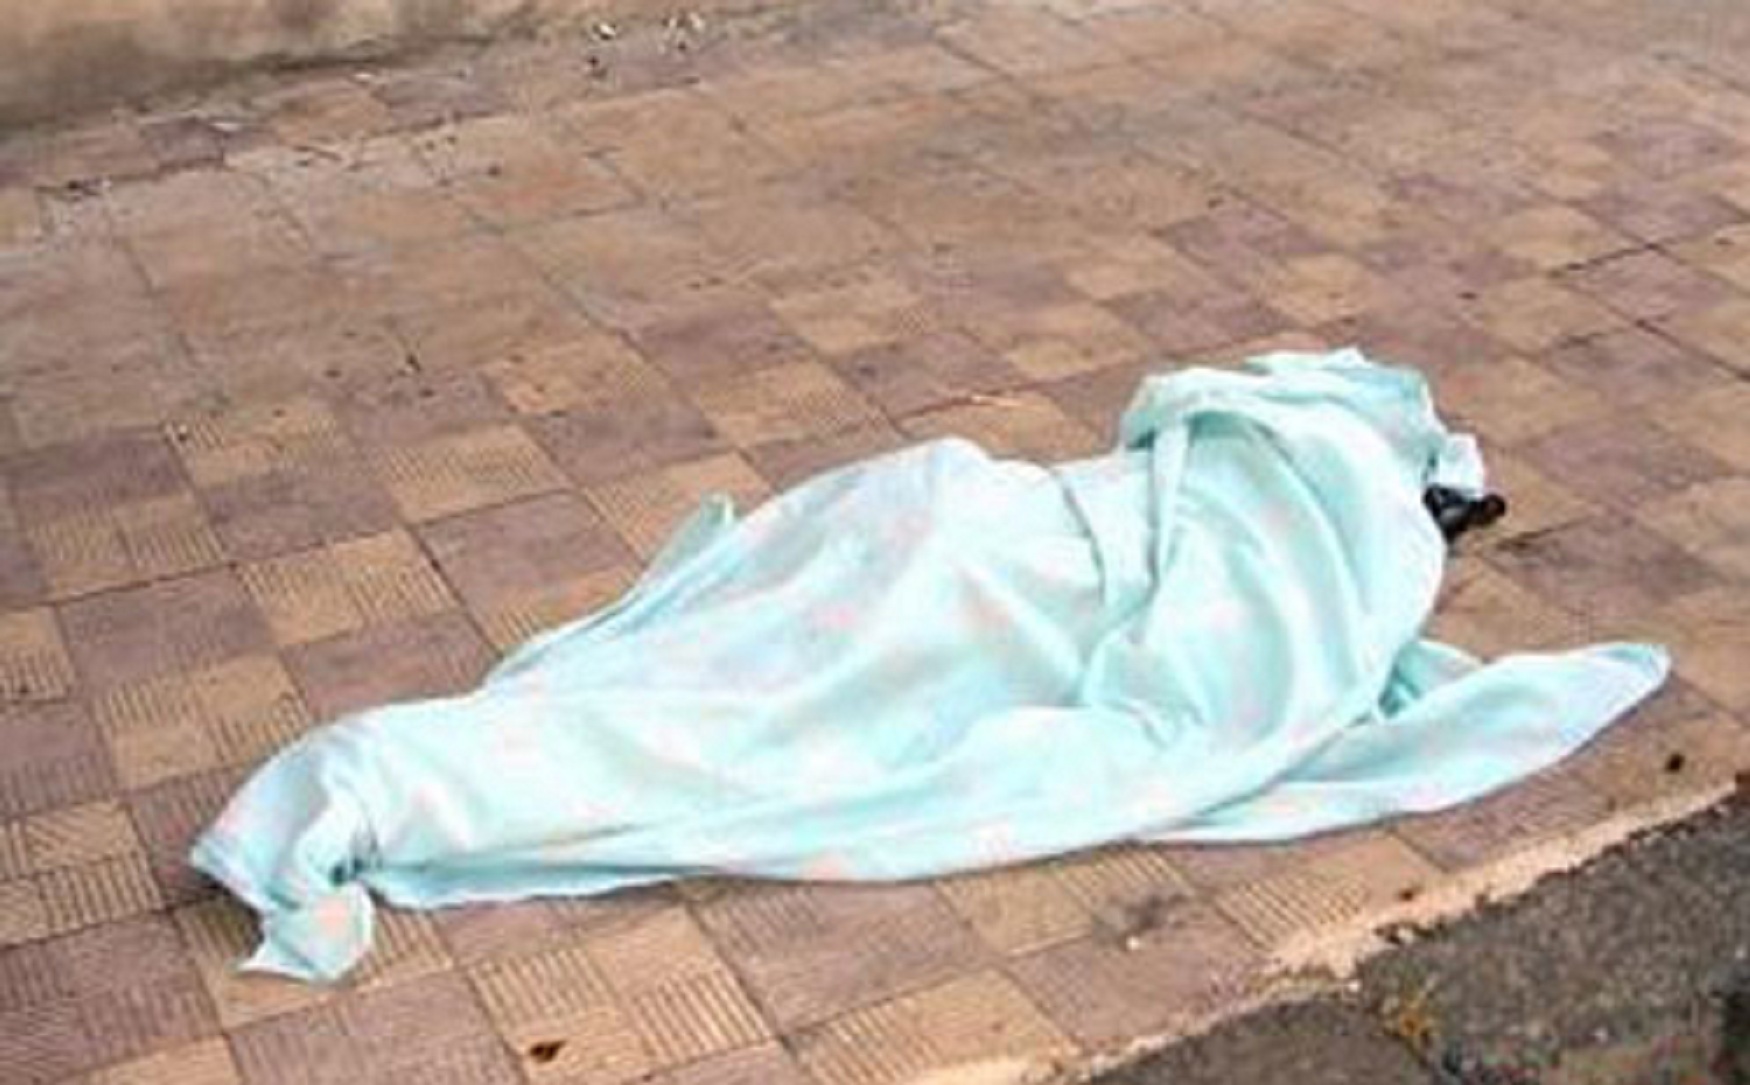  العثور على جثة فتاة مقتولة بجوار سور الإستاد الرياضي في كفر الشيخ